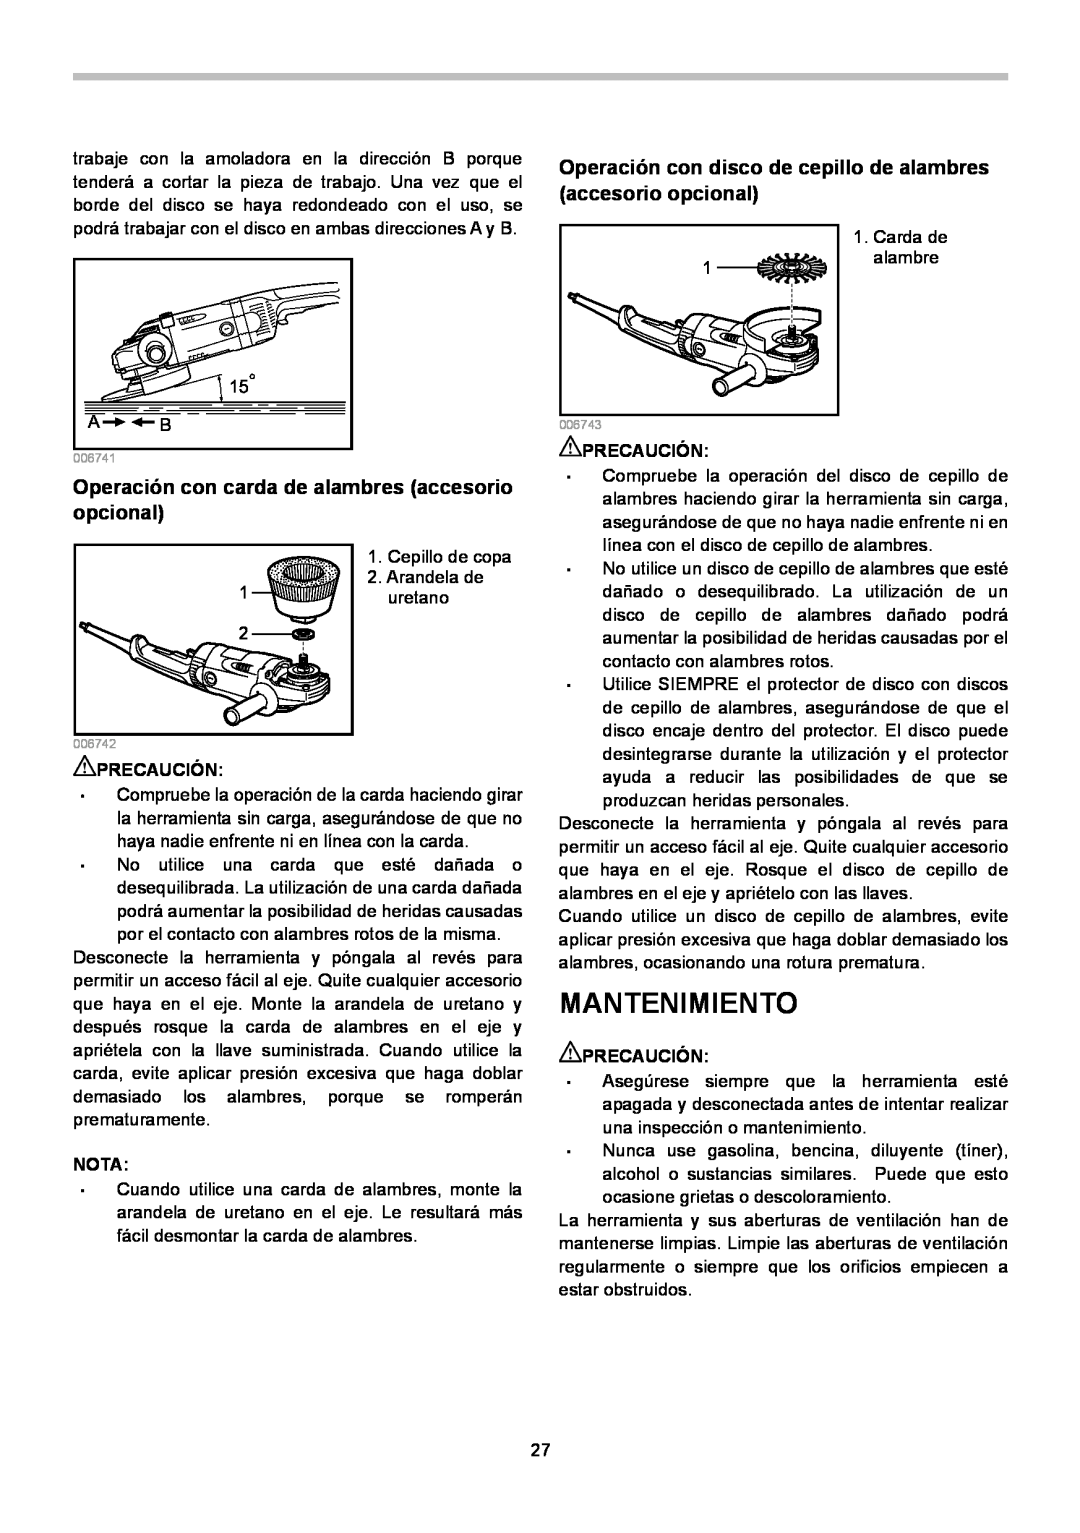 Makita GA7020, GA7021, GA9020 instruction manual Mantenimiento, Operación con carda de alambres accesorio opcional 